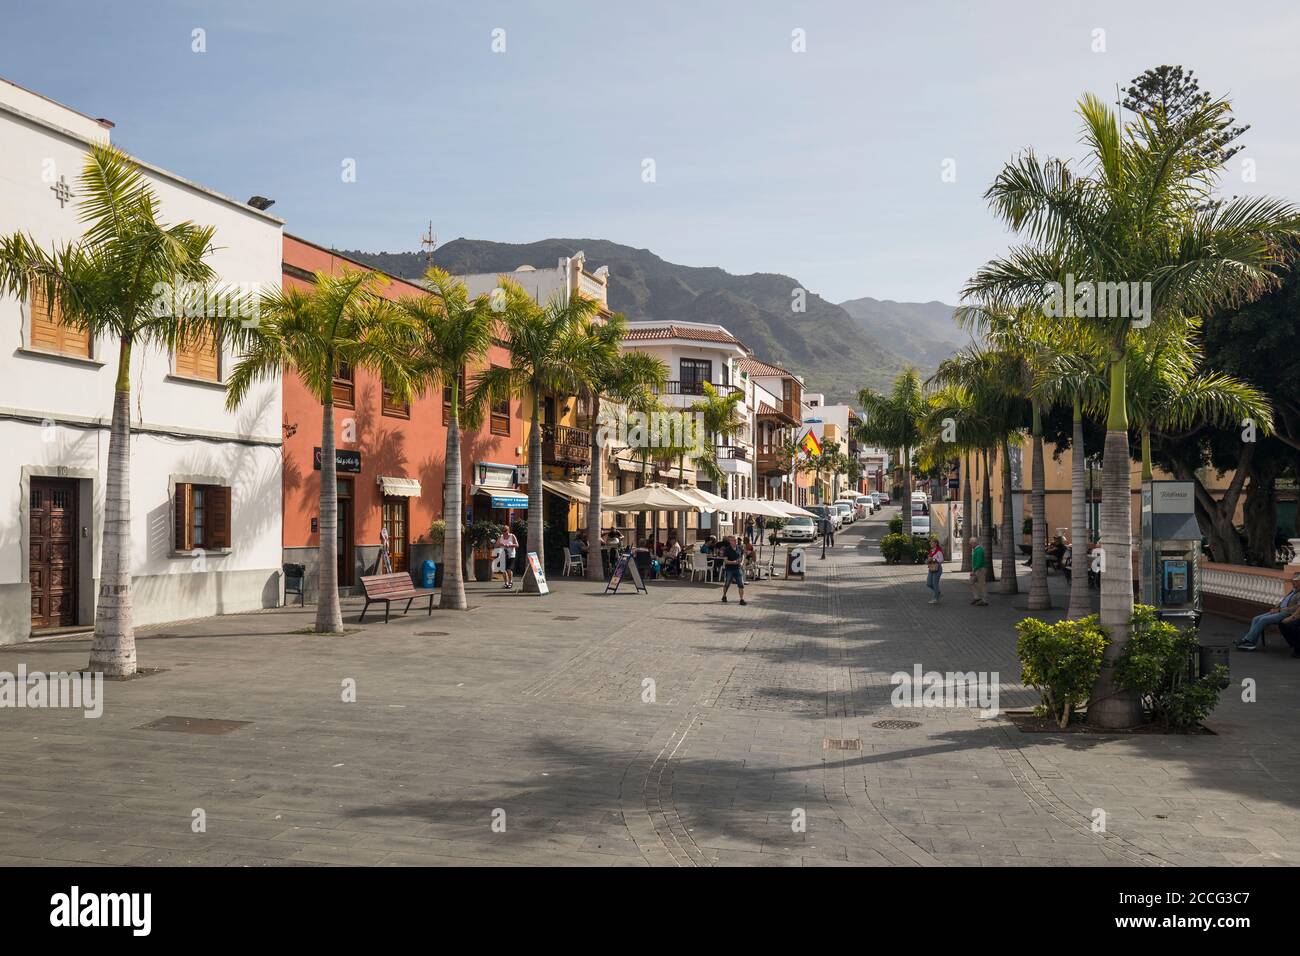 The Plaza de los Remedios, behind the Teno Mountains, Buenavista del Norte, Tenerife, Canary Islands, Spain Stock Photo